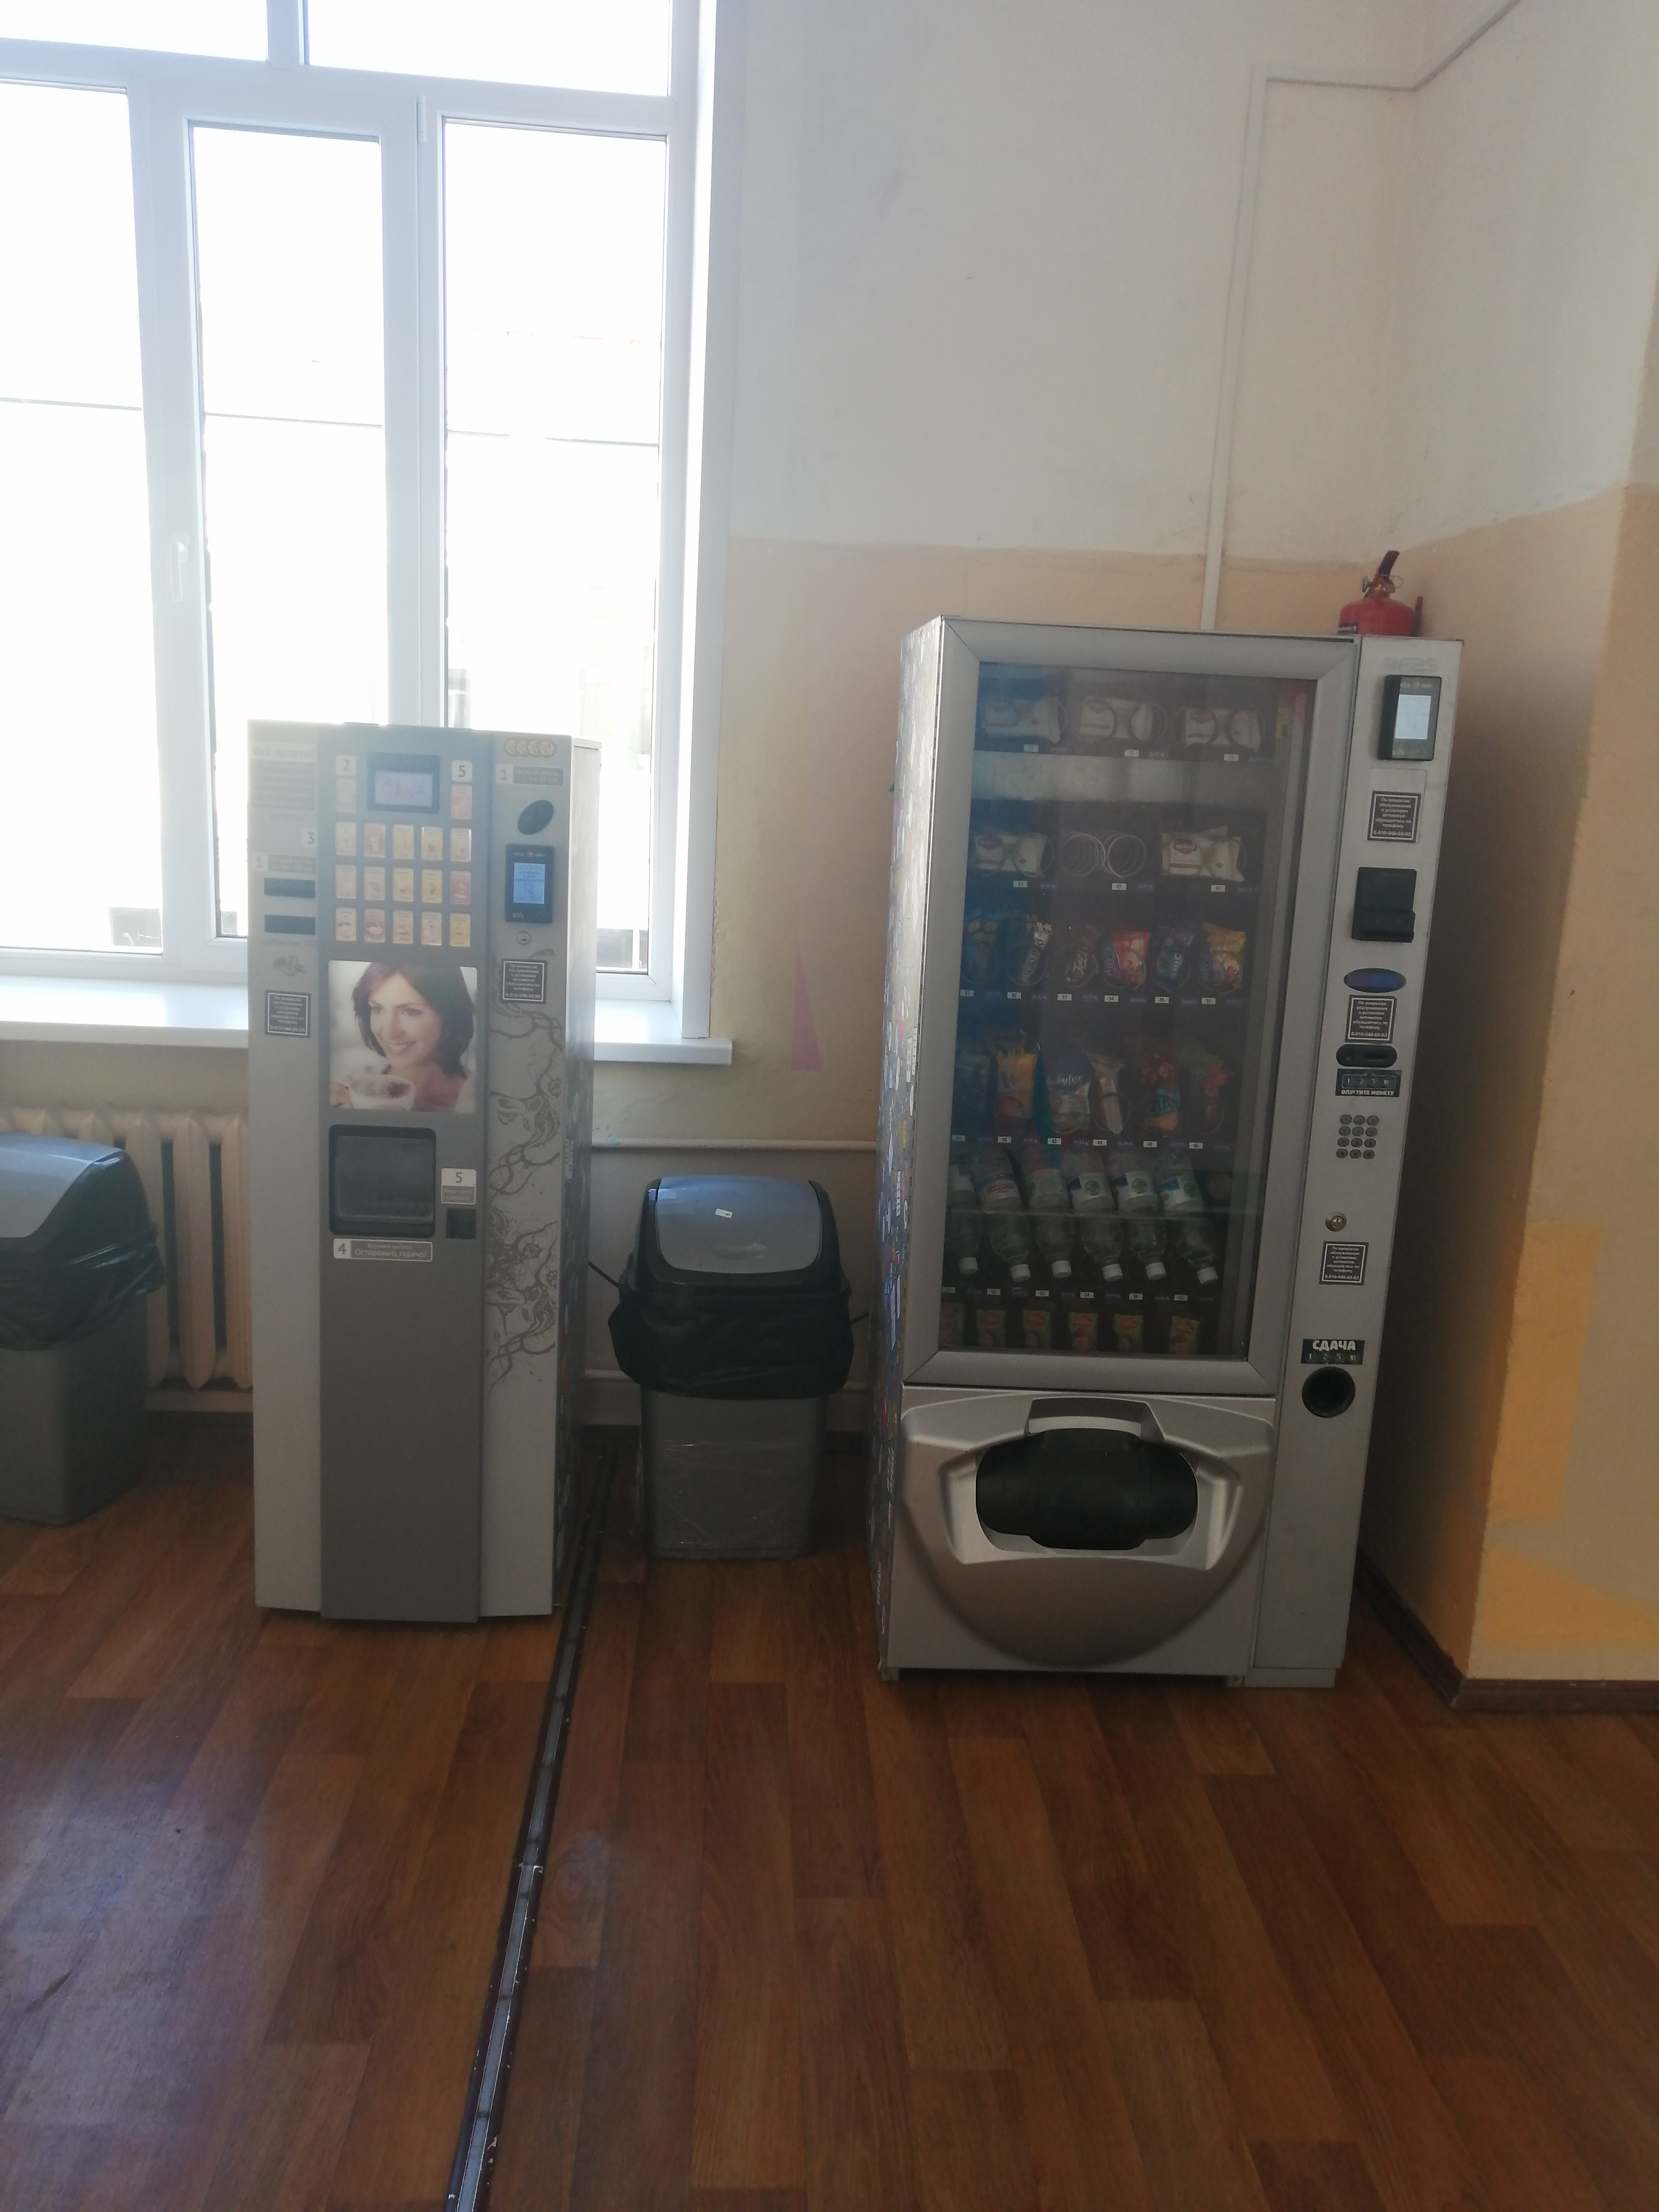 Автоматы для продажи напитков и упакованной еды